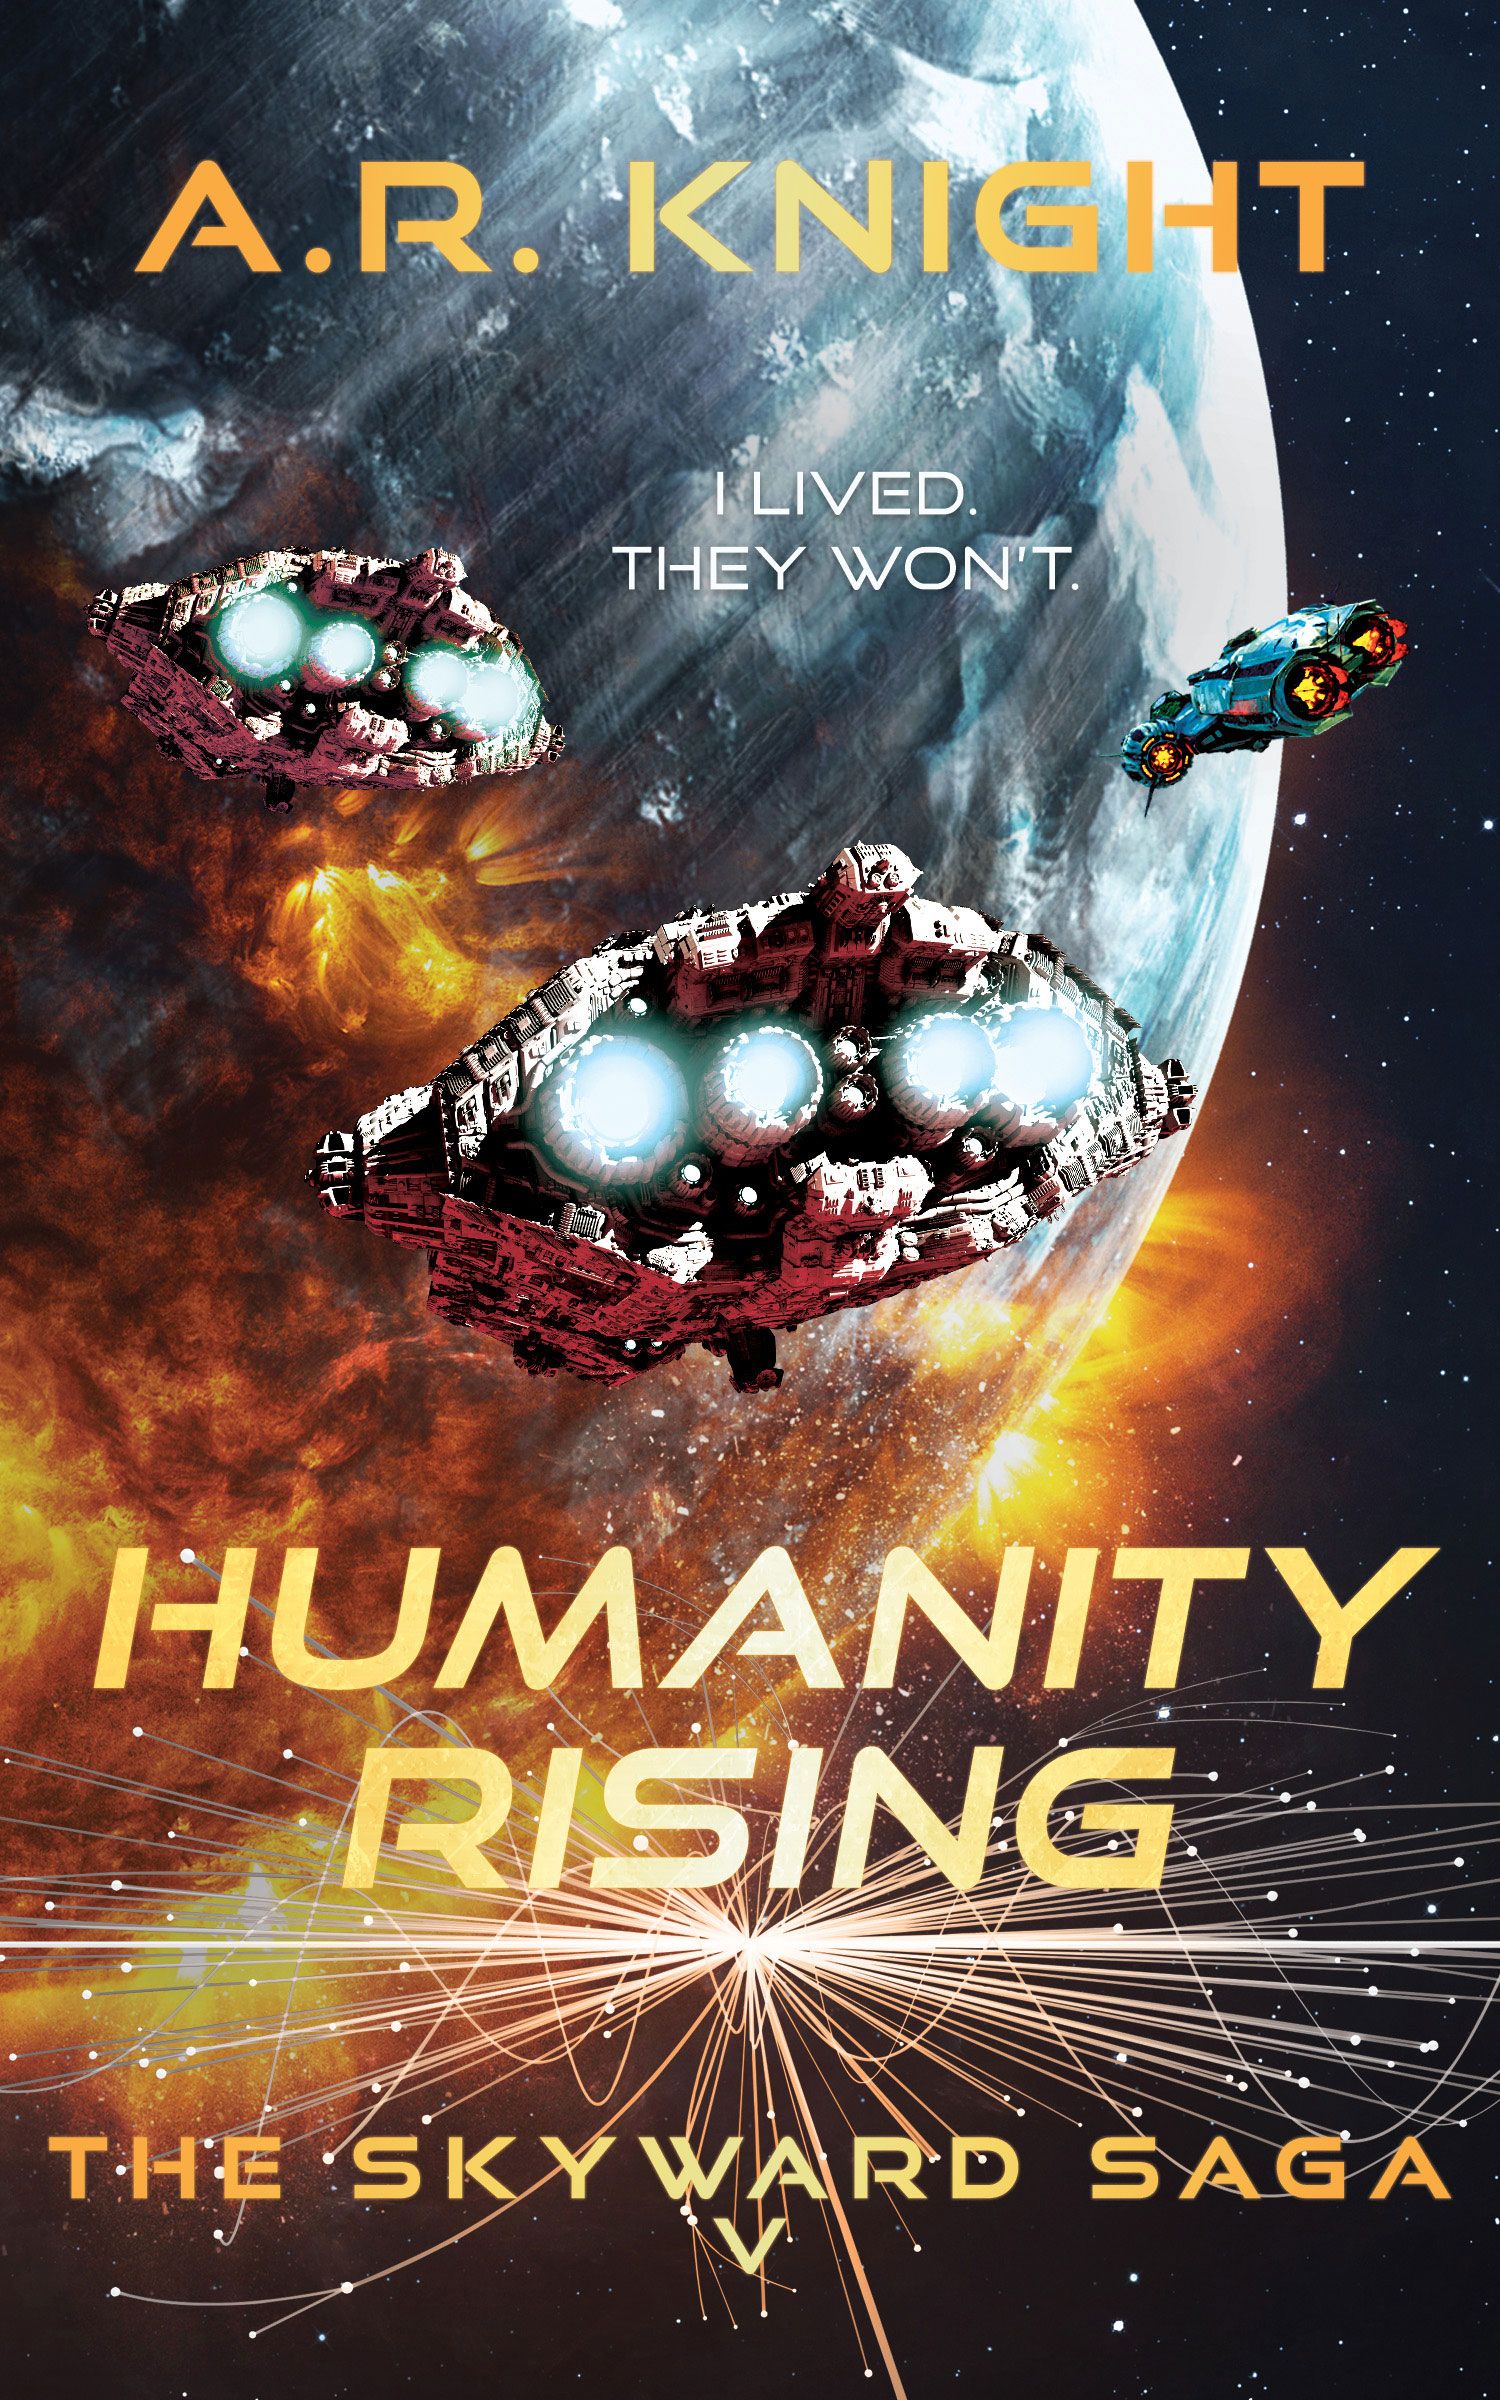 Humanity Rising